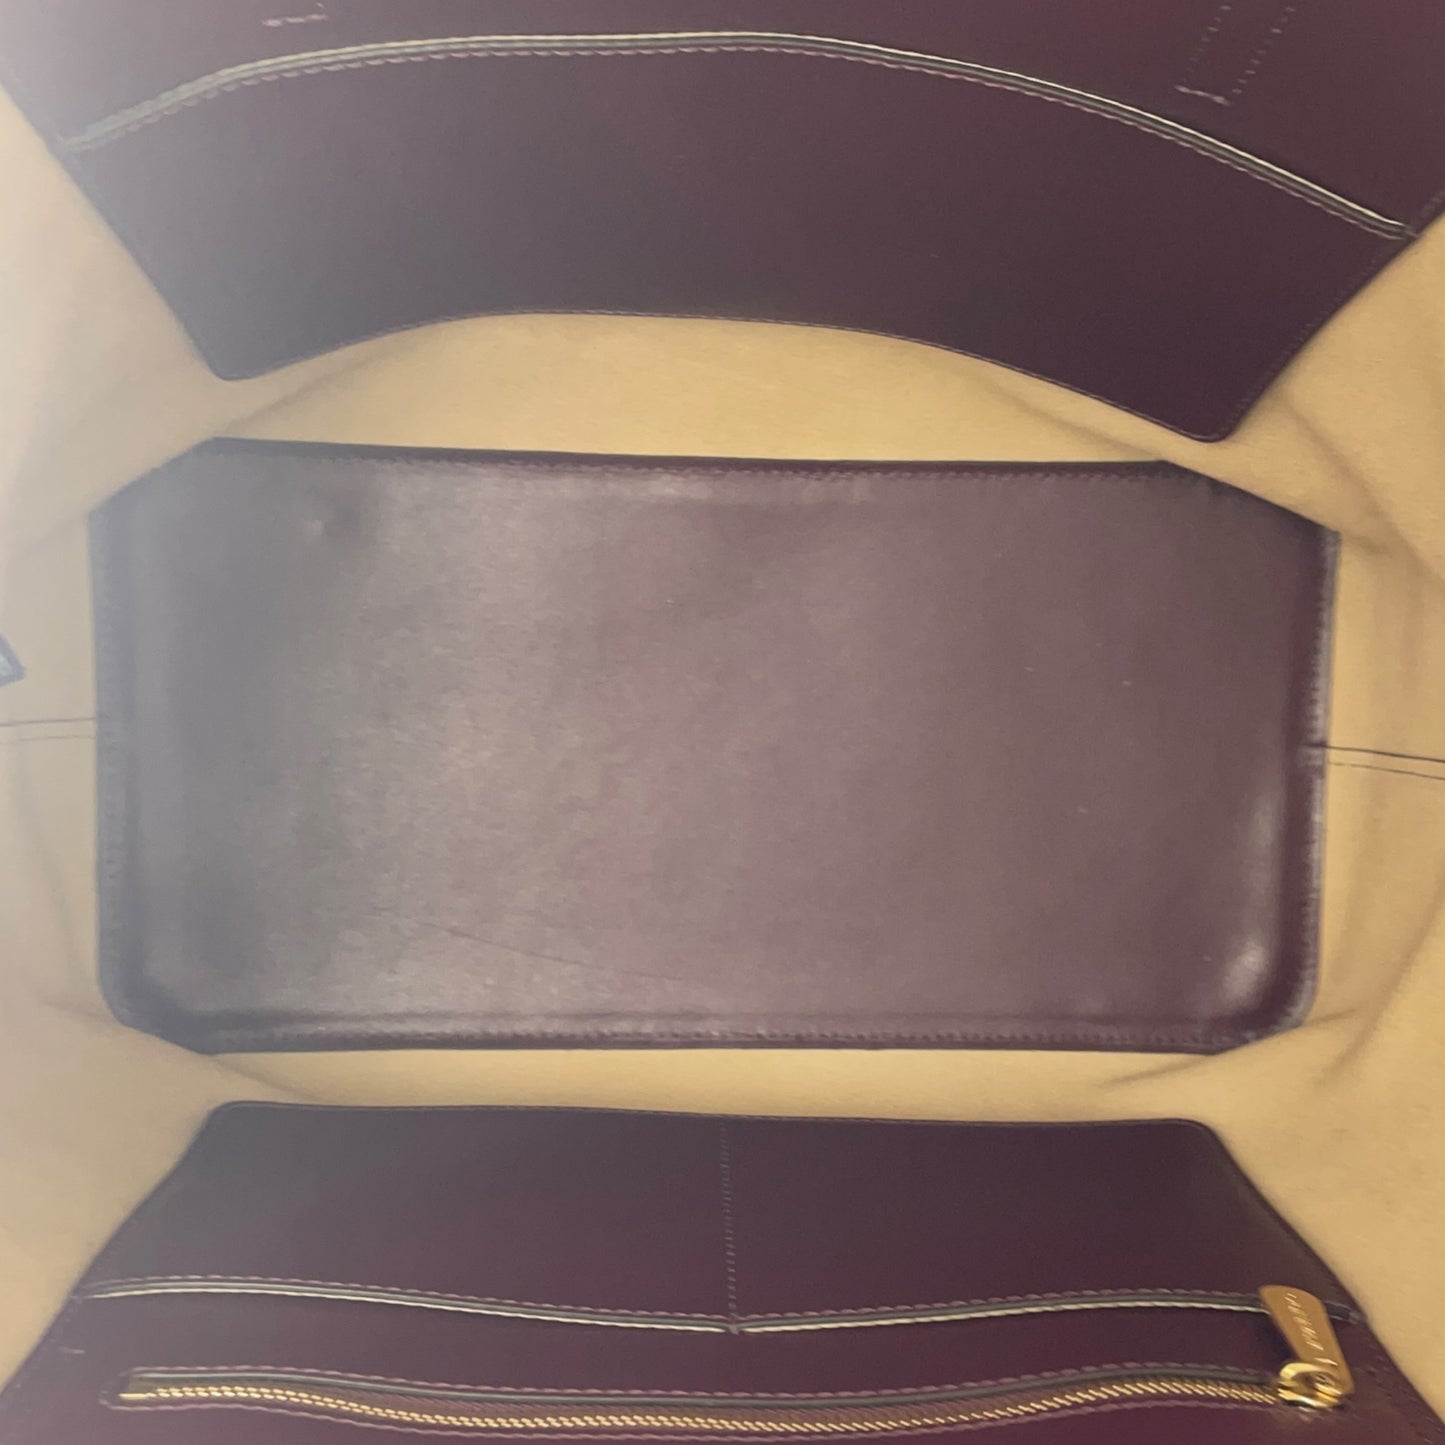 Michael Kors Emry Large Plum Purple Leather Tote Bag